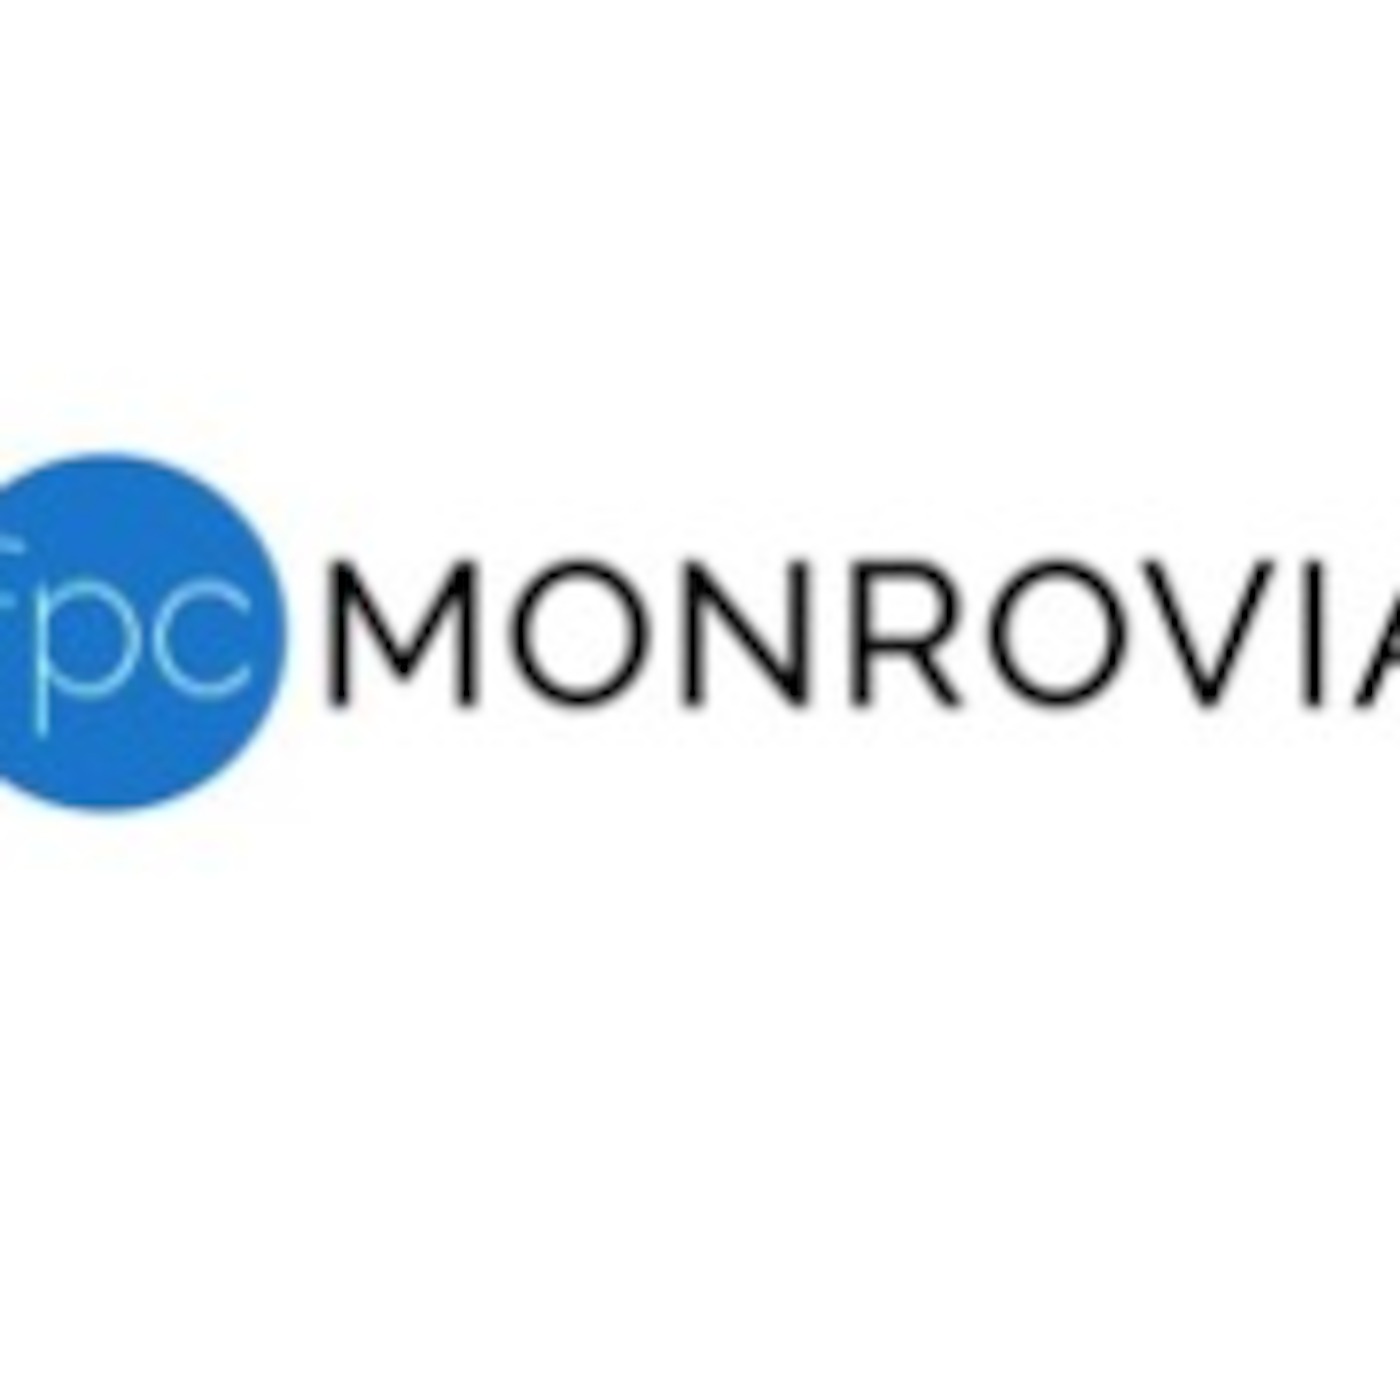 FPC Monrovia